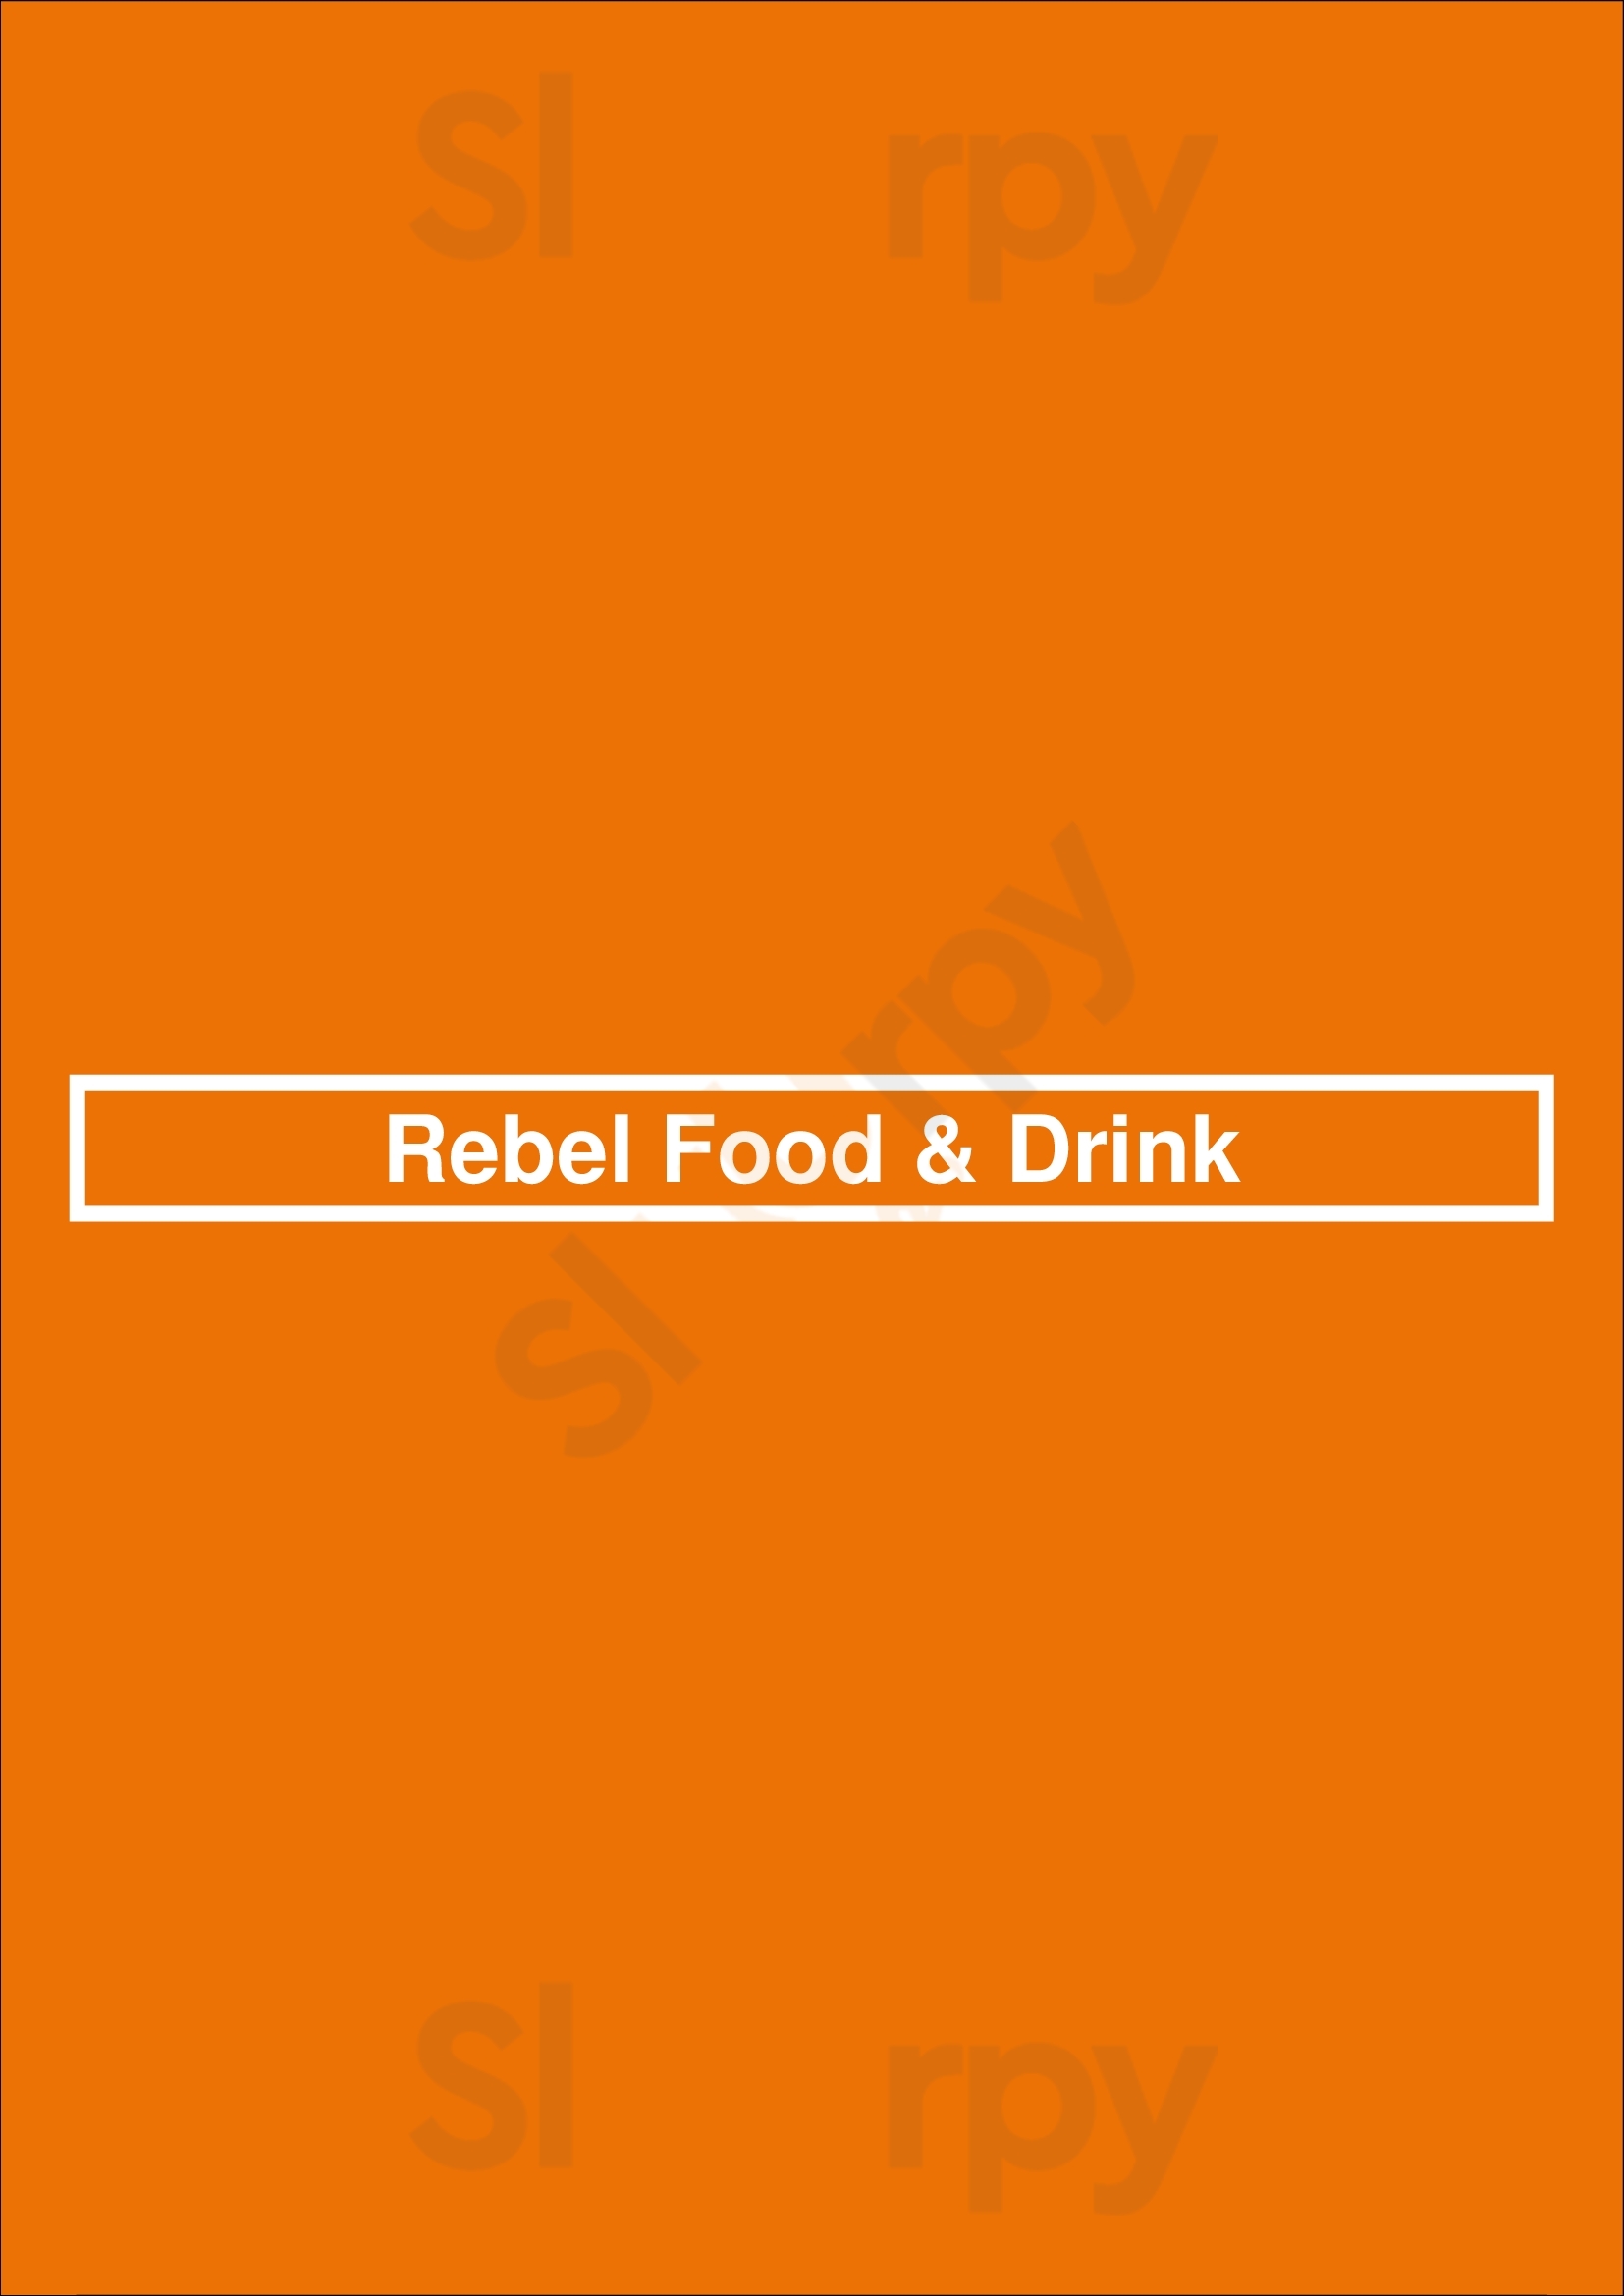 Rebel Food & Drink Edmonton Menu - 1